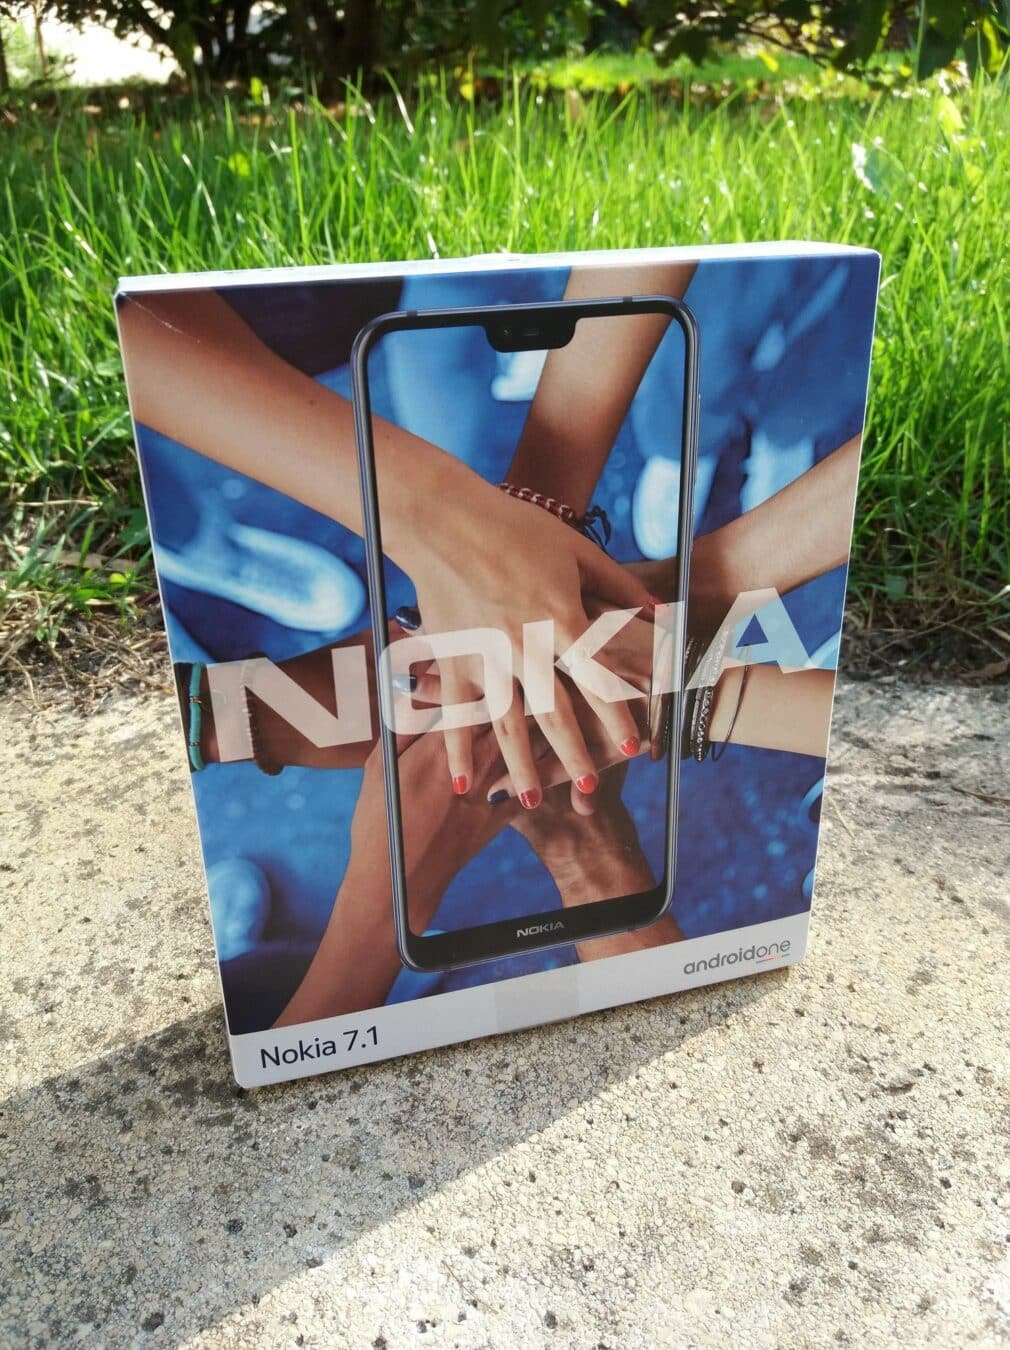 Nokia 7.1 20181020 124550 scaled Test – Nokia 7.1 : Le retour en force de Nokia ? nokia 7.1